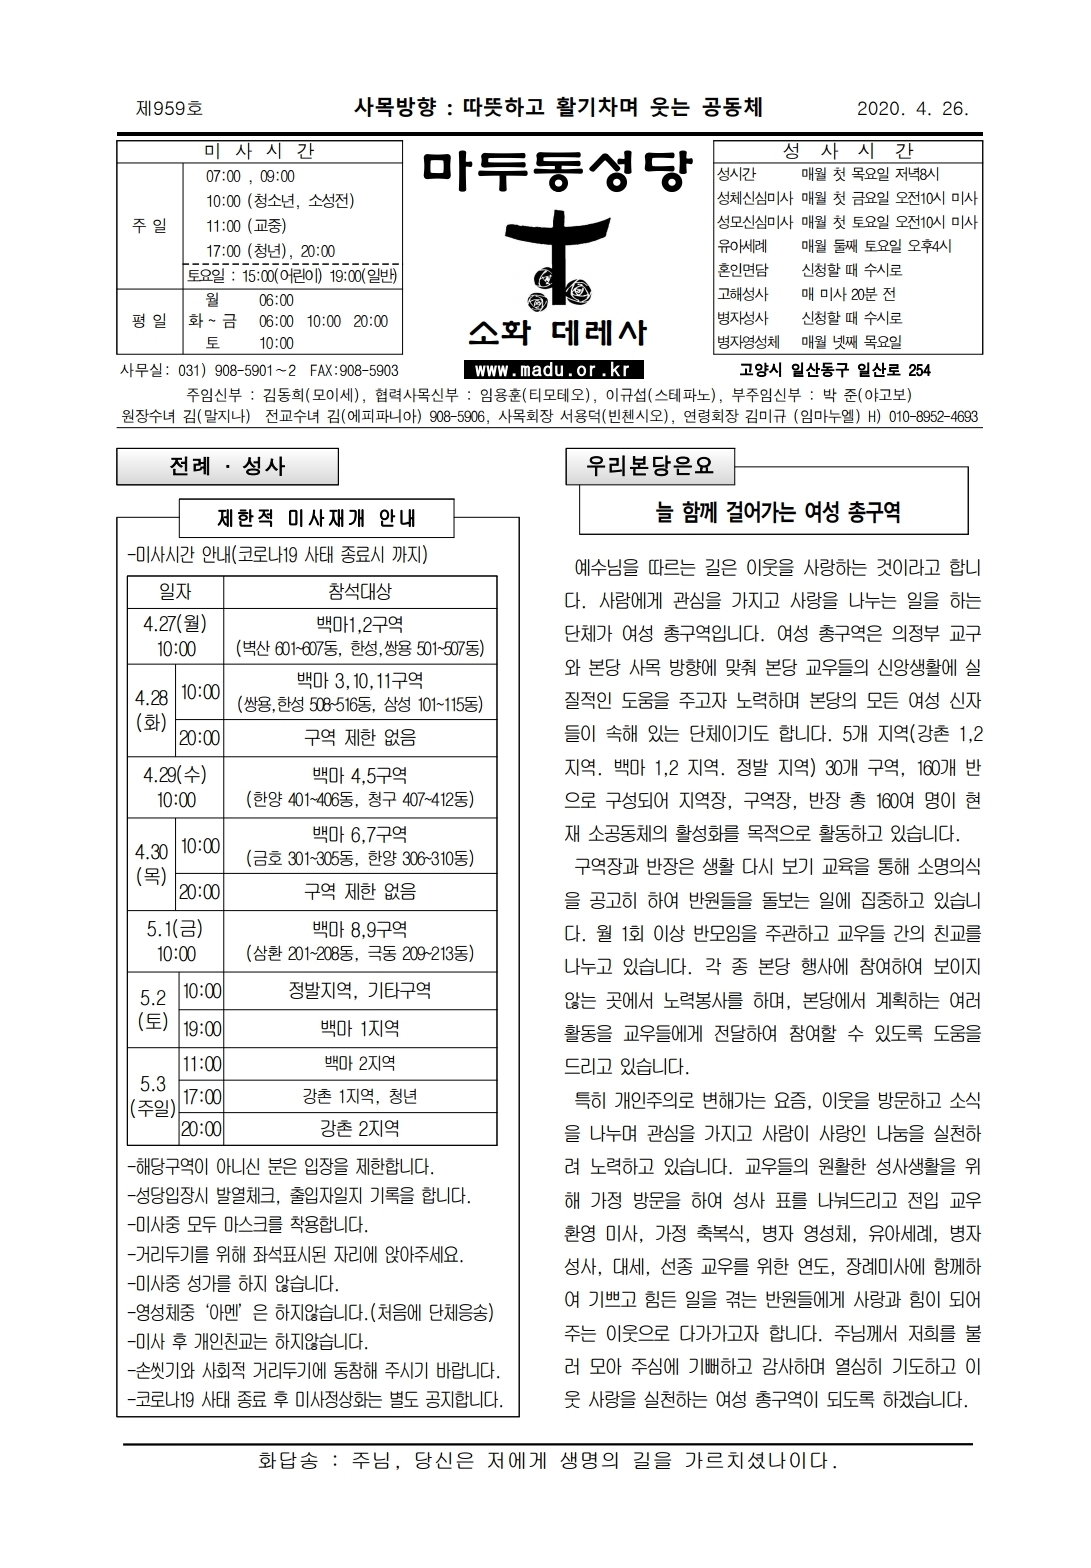 마두20-04-26주보_page_1.jpg